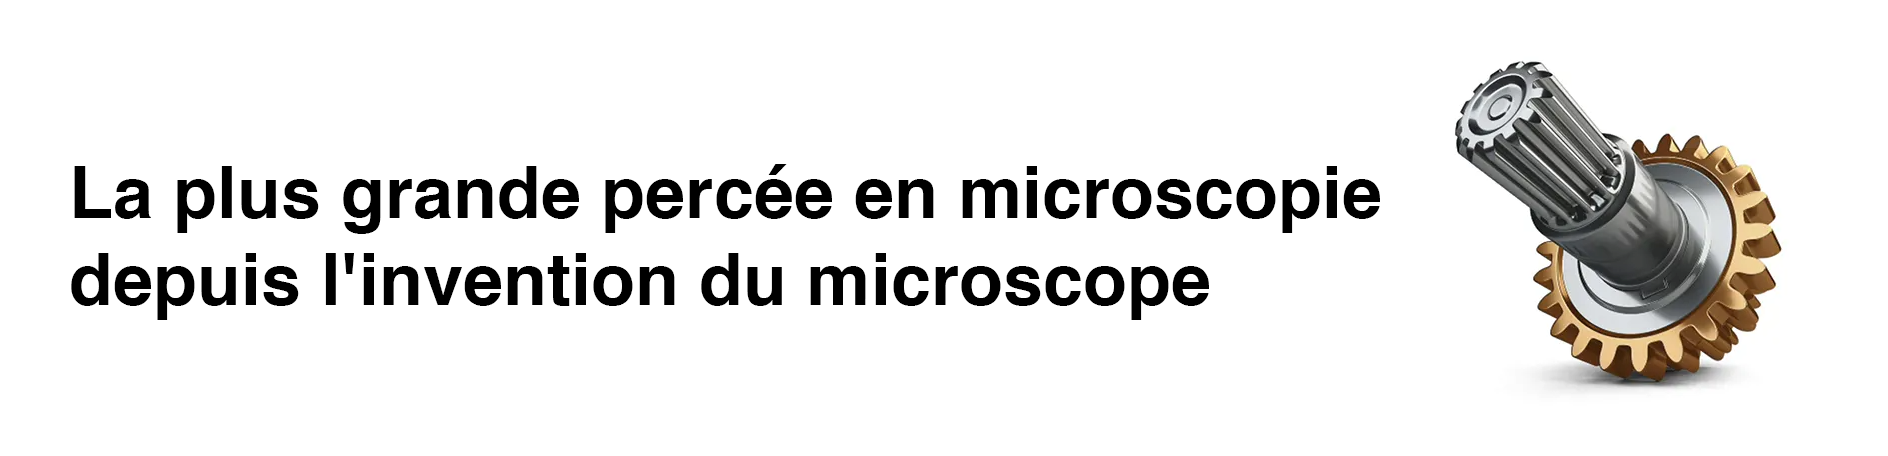 MICROSCOPE CONCEPT